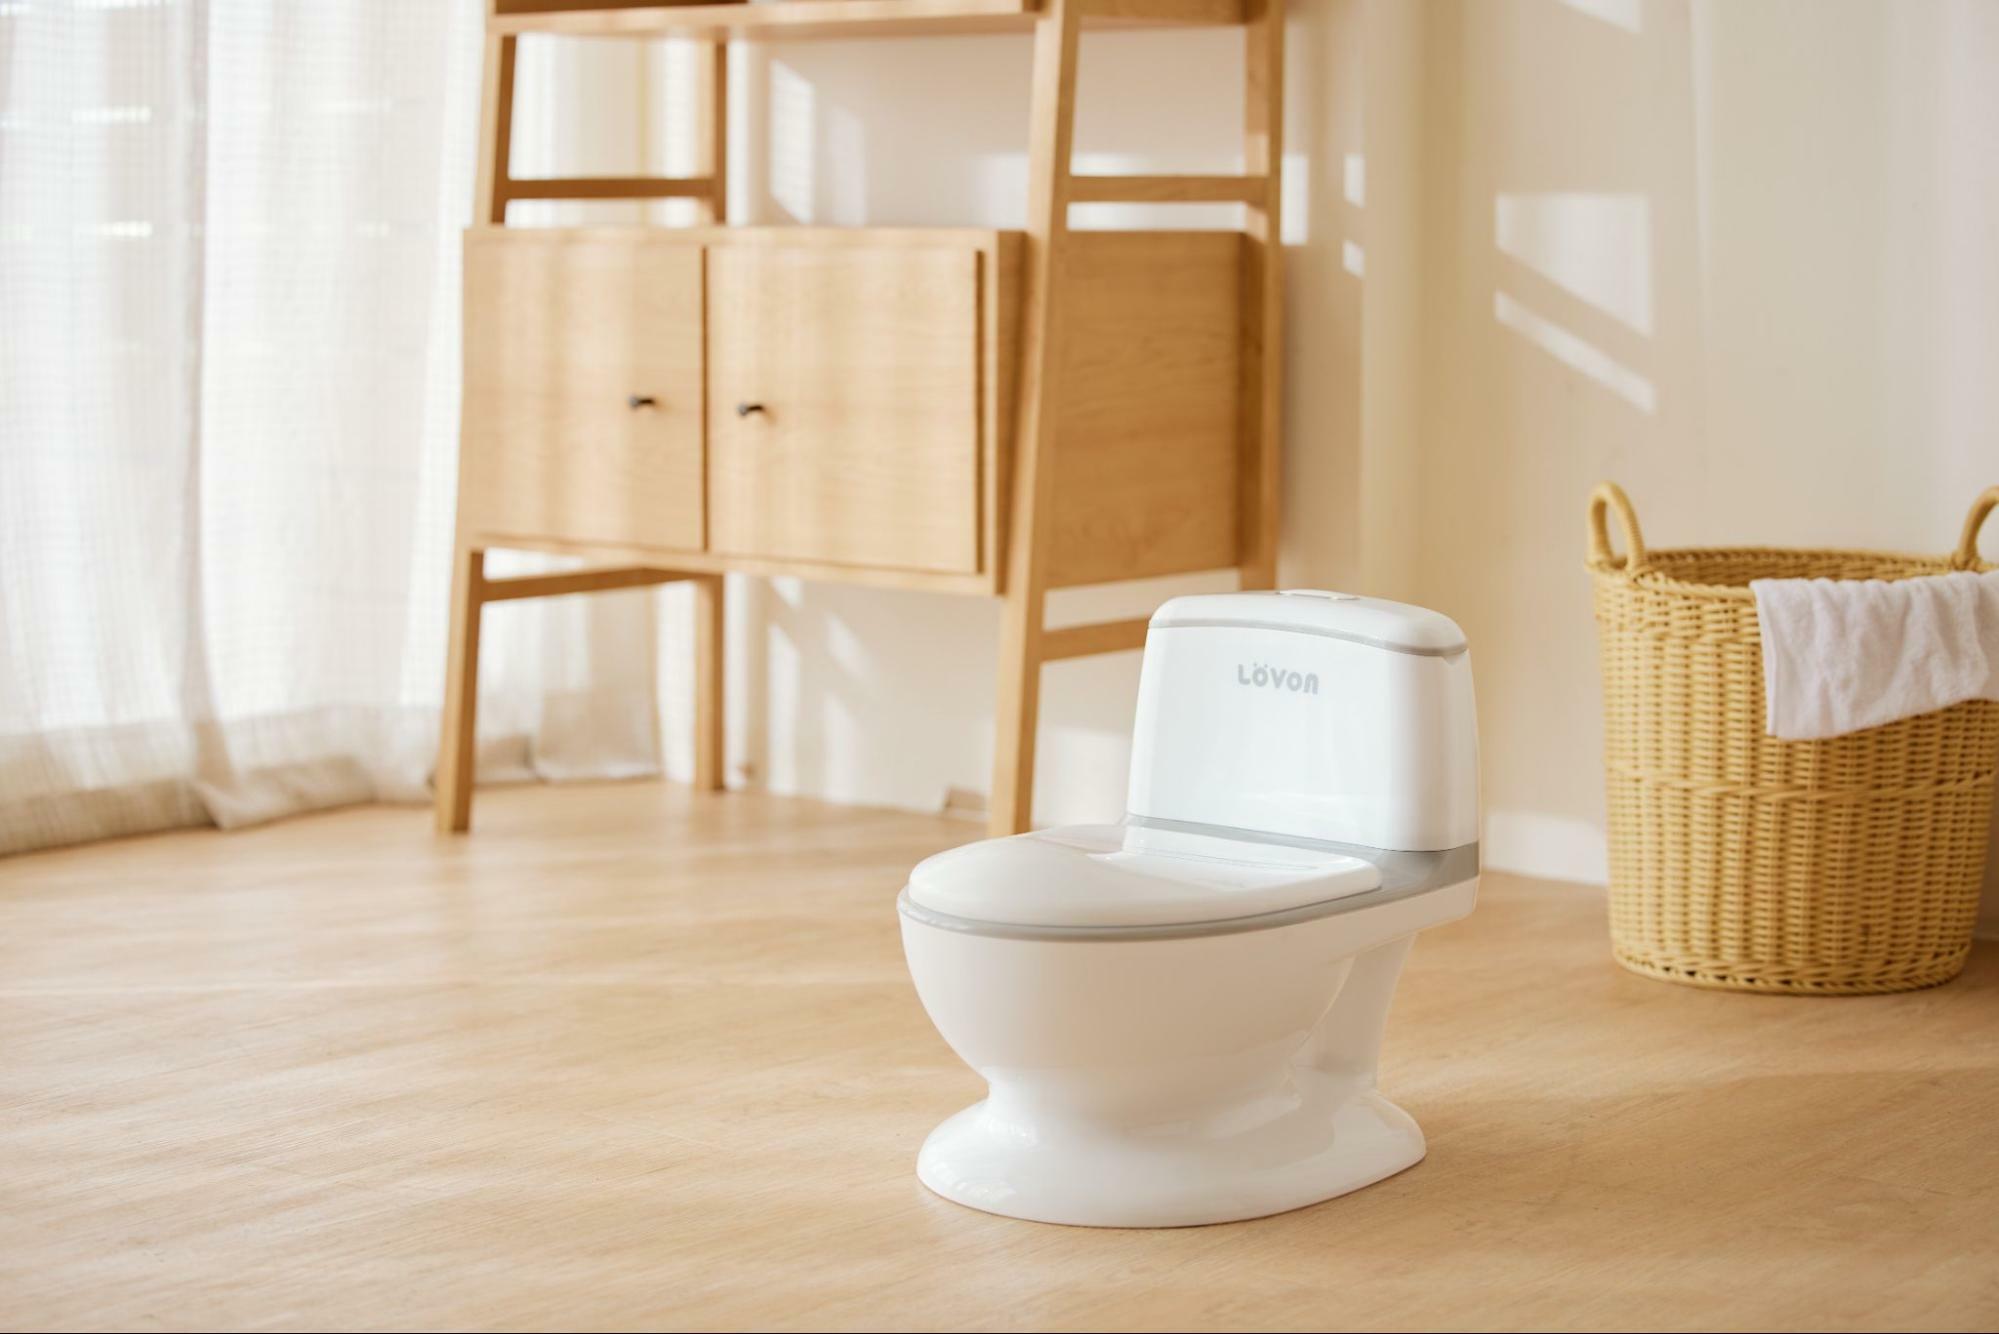 【LOVON】小さなトイレ学習をシミュレーションし、赤ちゃんのトイレトレーニングに最適です。